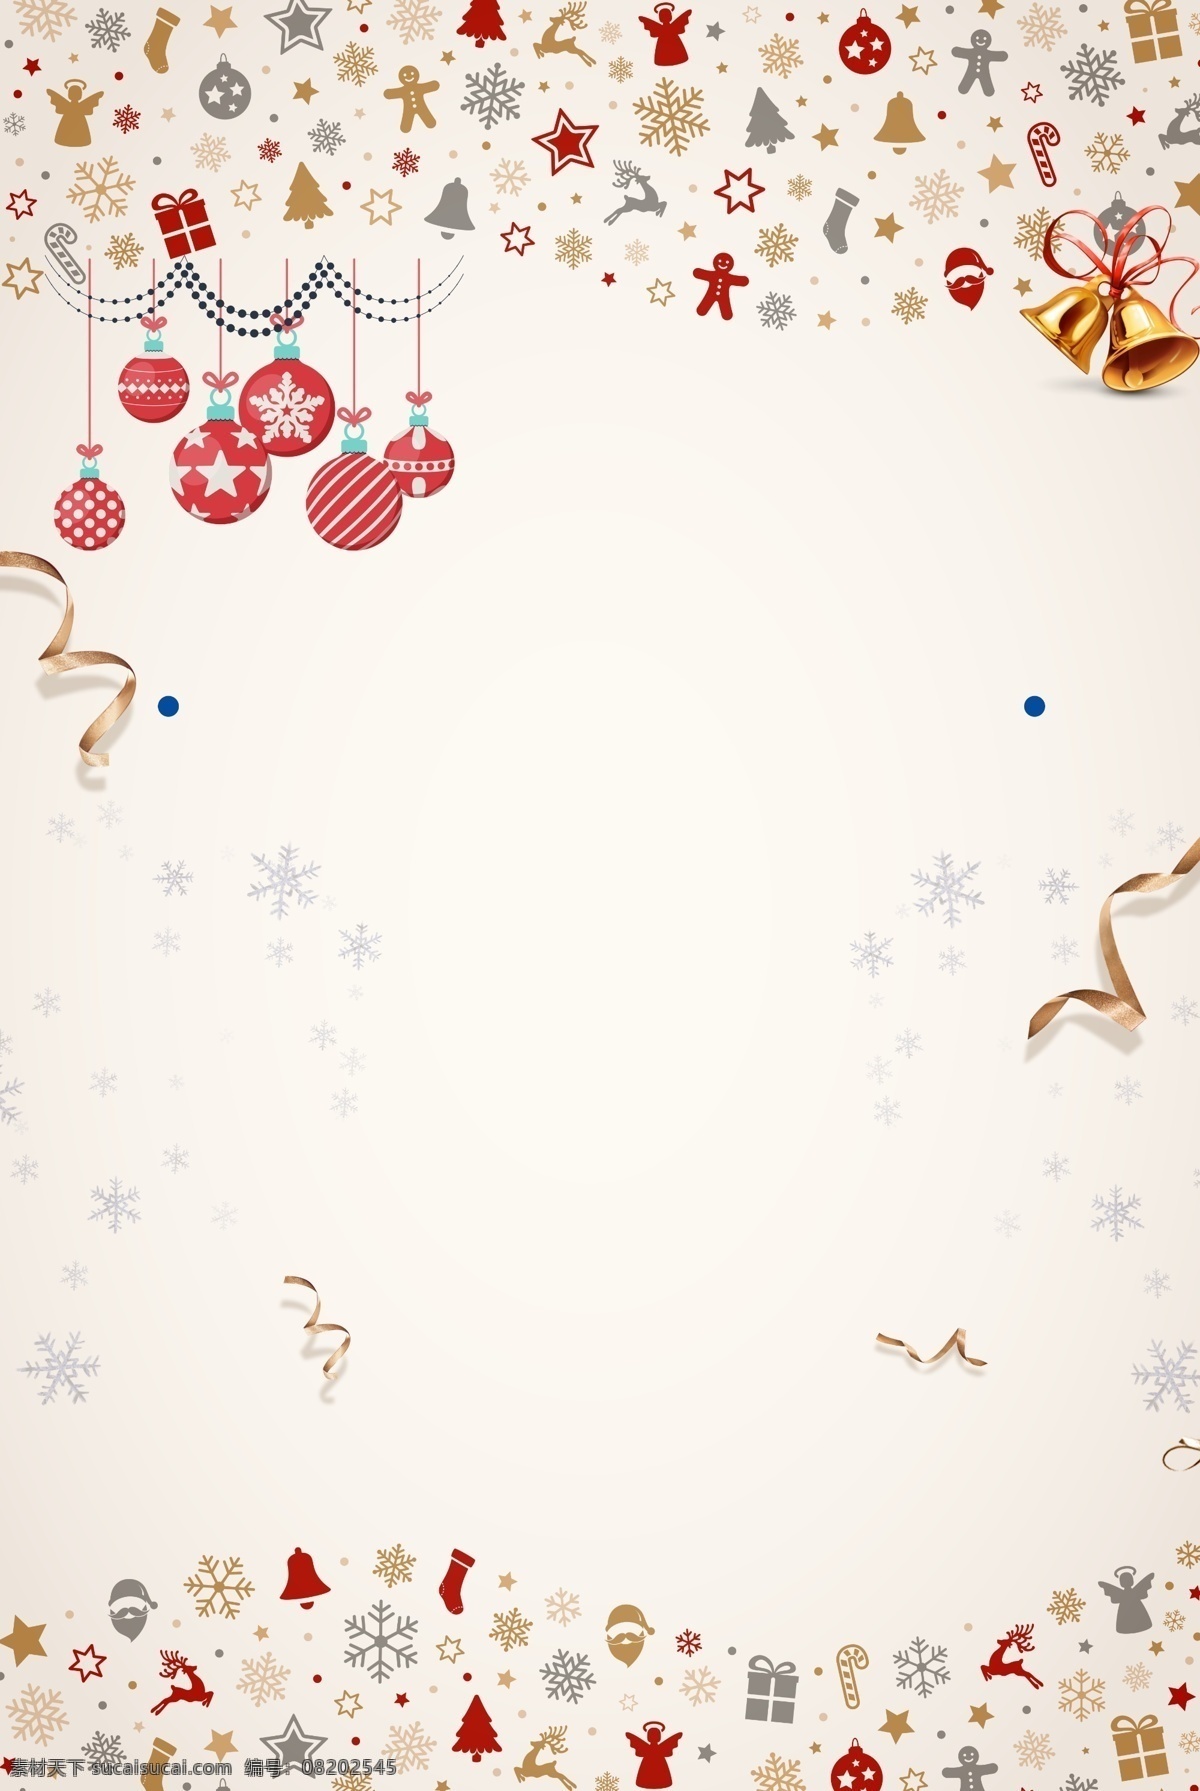 简约 圣诞节 雪花 吊球 装饰 背景 飘带 礼物 圣诞素材 新年海报 圣诞装饰 铃铛 圣诞吊球 圣诞节来了 圣诞广告 圣诞活动 圣诞主题 圣诞背景模板 创意圣诞背景